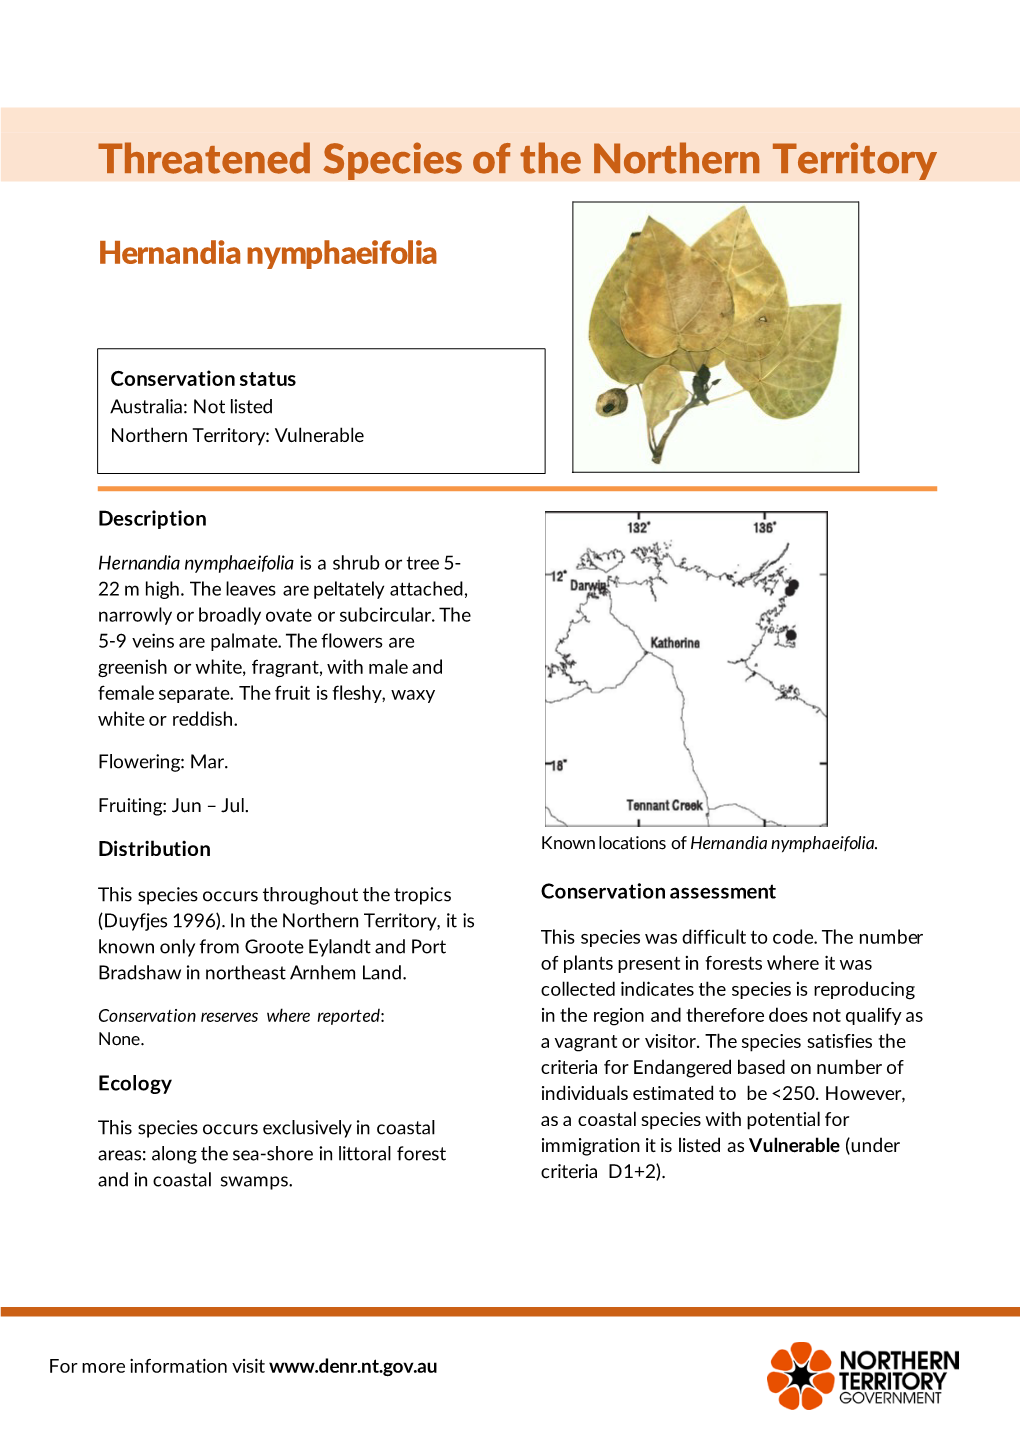 Hernandia Nymphaeifolia